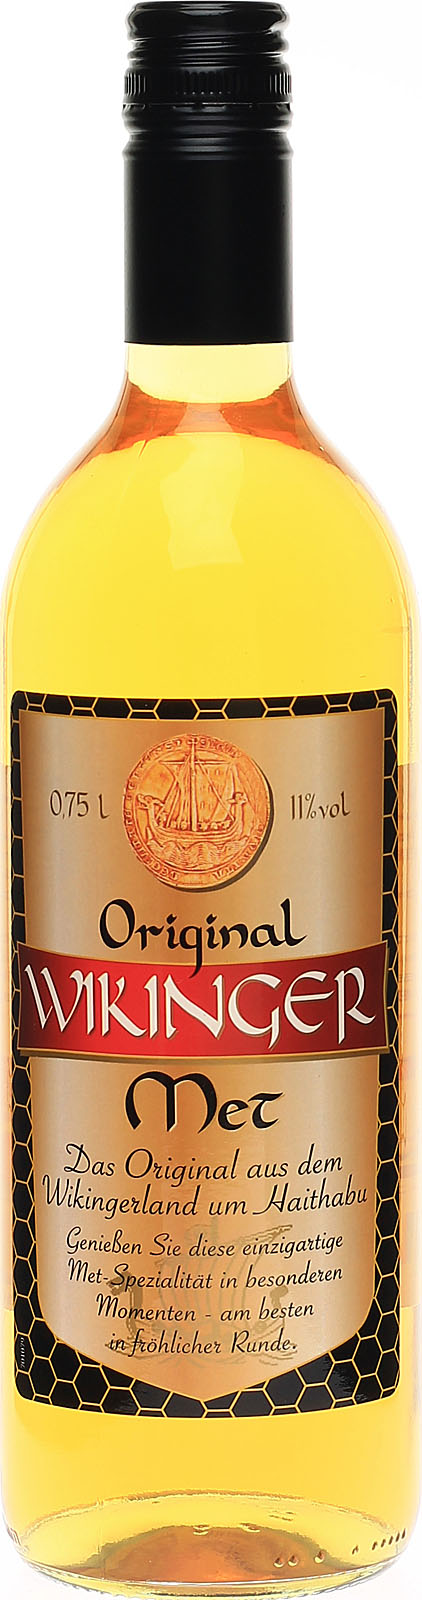 Wikinger Met Original, nach Honigwein, überl köstlicher